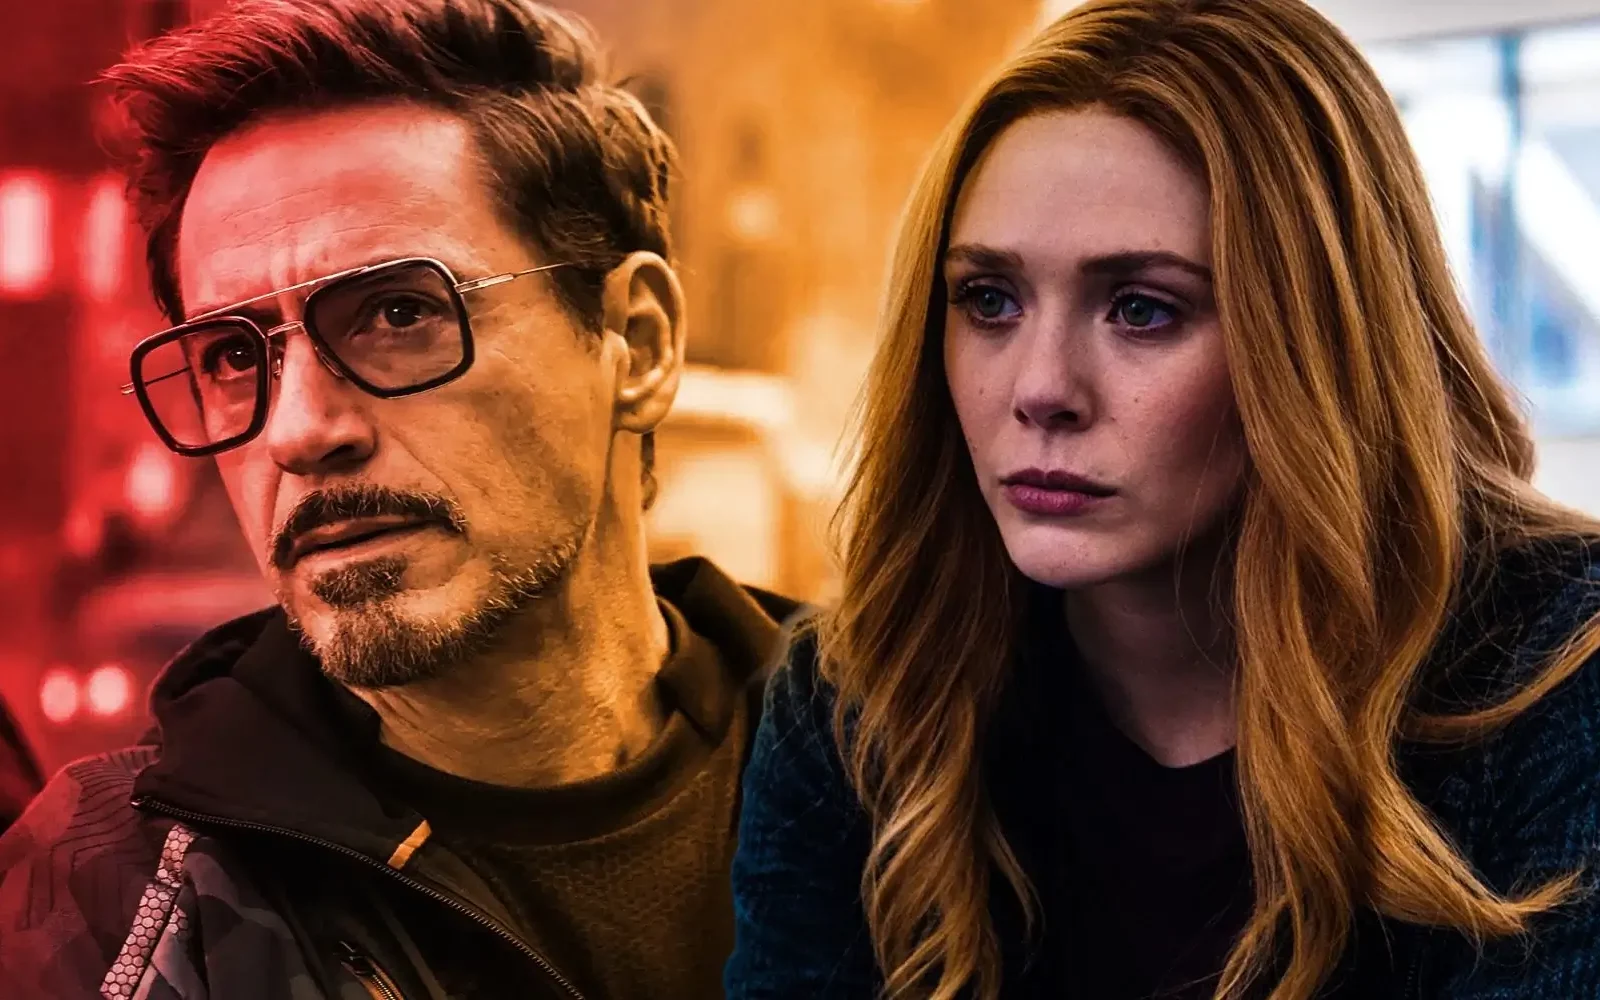 Wanda Vs. Iron Man | Will Scarlett Witch Defeat Tony Stark?